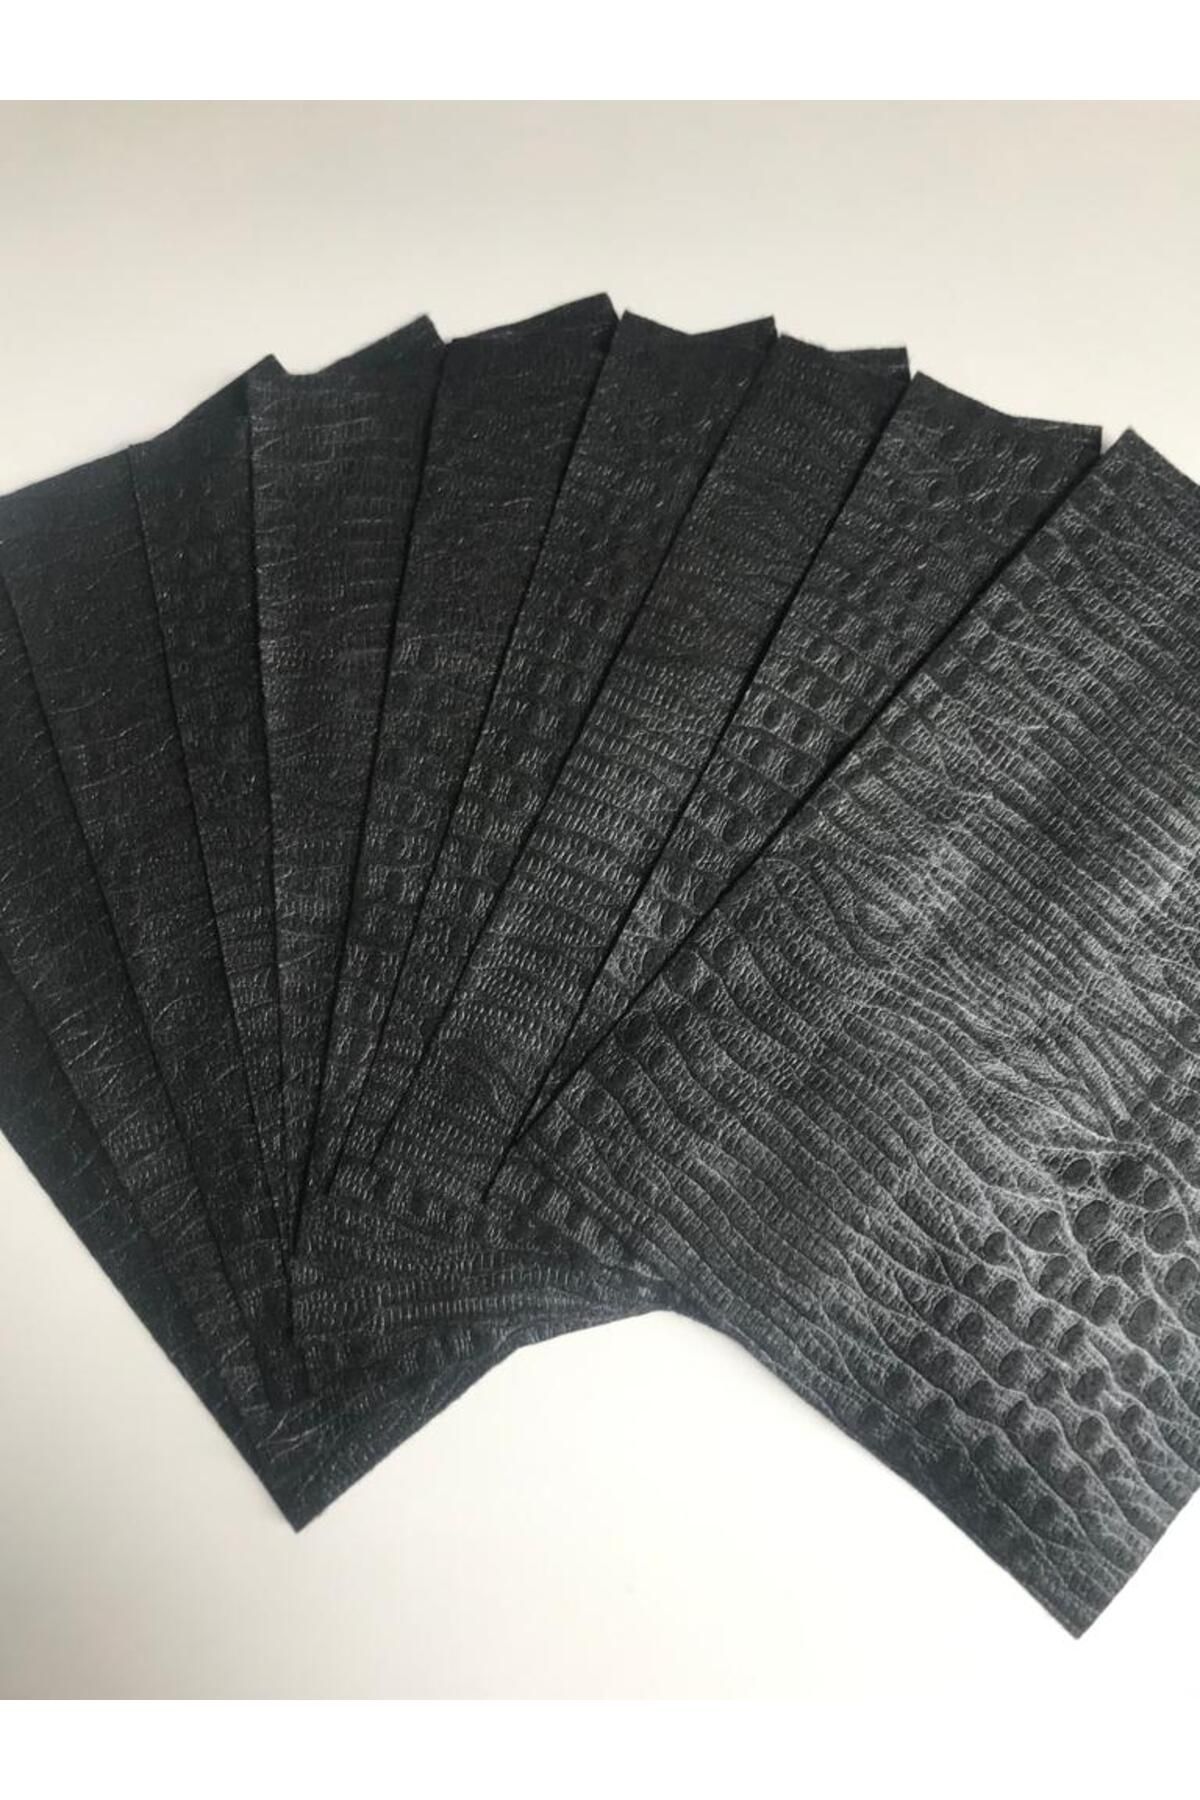 Anchor Timsah Desenli Siyah 10 Adet Yumuşak Keçe Kumaşı Çanta I Pad Kılıf Yapım Malzemesi (A4 Ebadında)